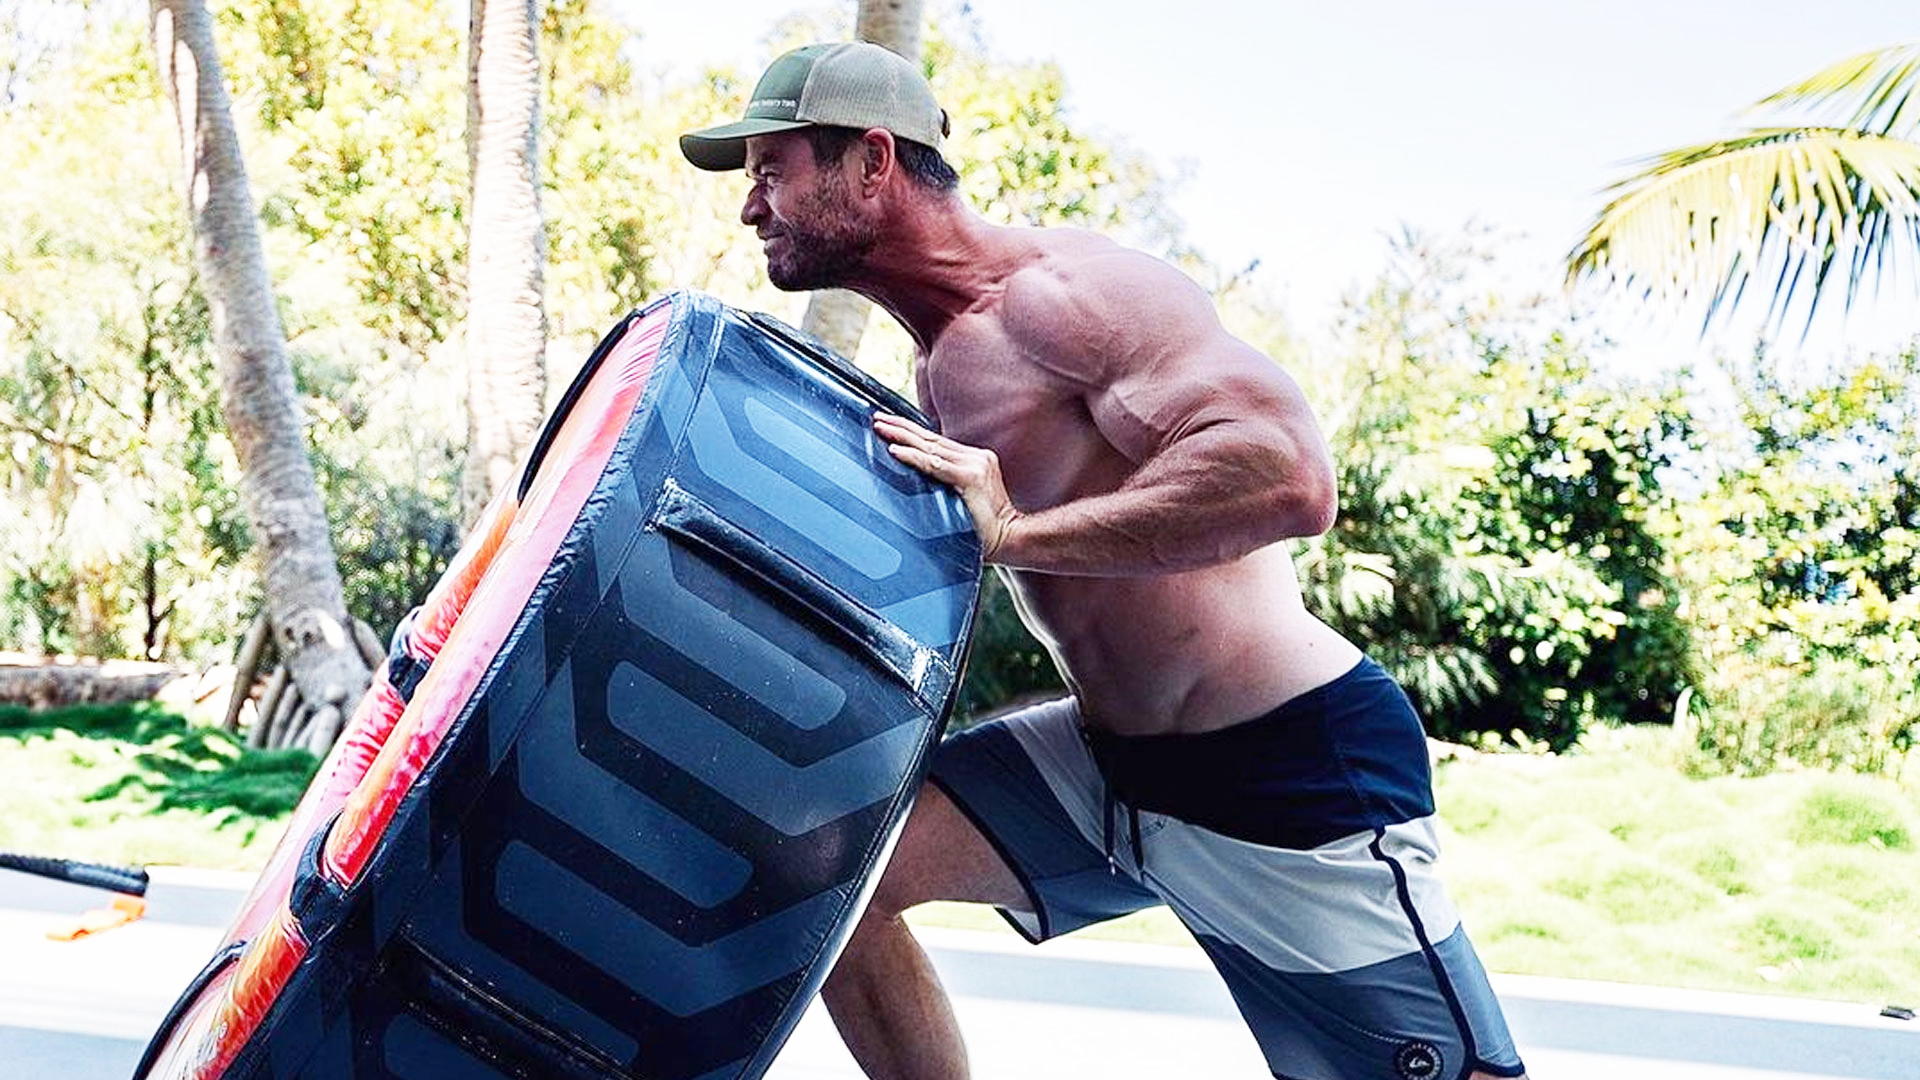 Verificați-l pe Chris Hemsworth; s Pierdere dramatică în greutate - ABC News